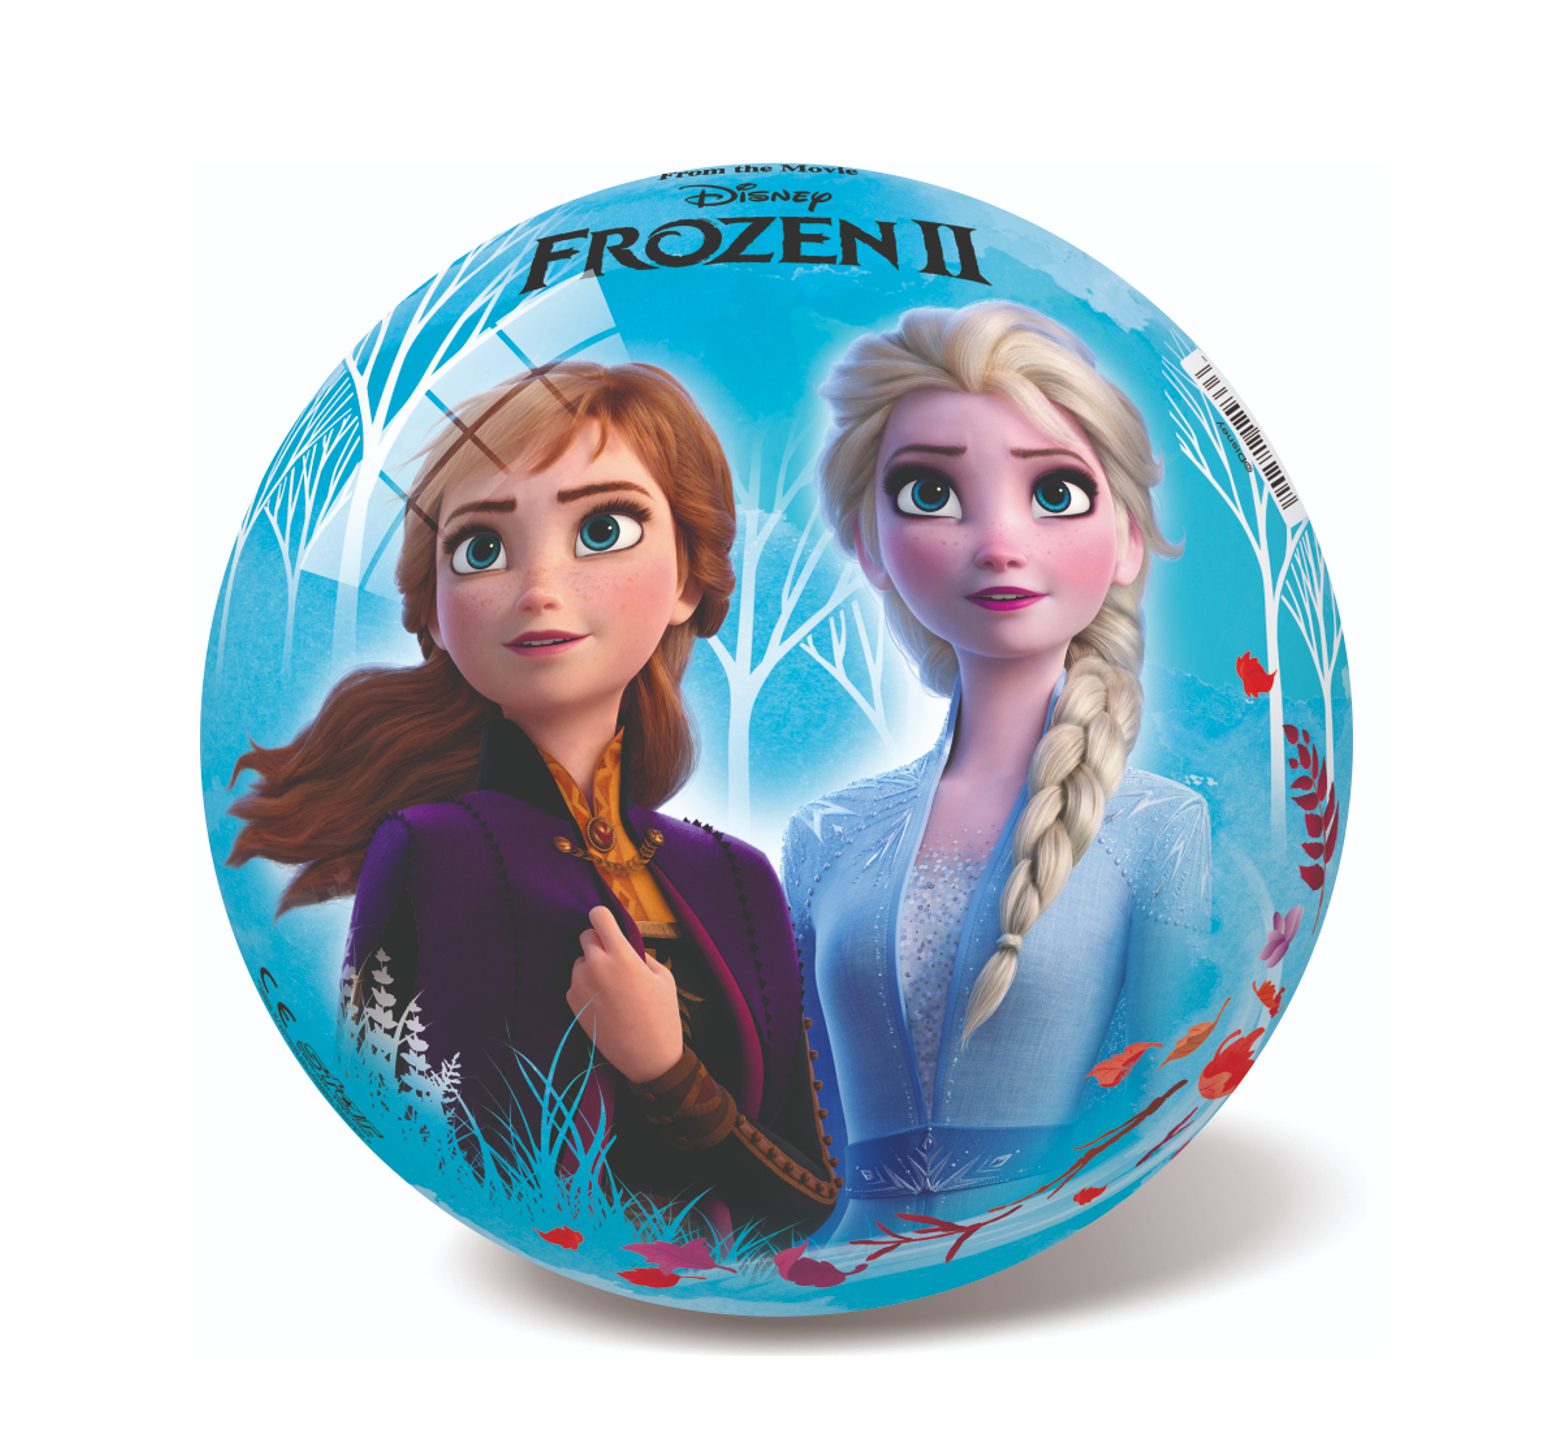 Μπάλα με την Frozen II πλαστική διαμέτρου 14εκ